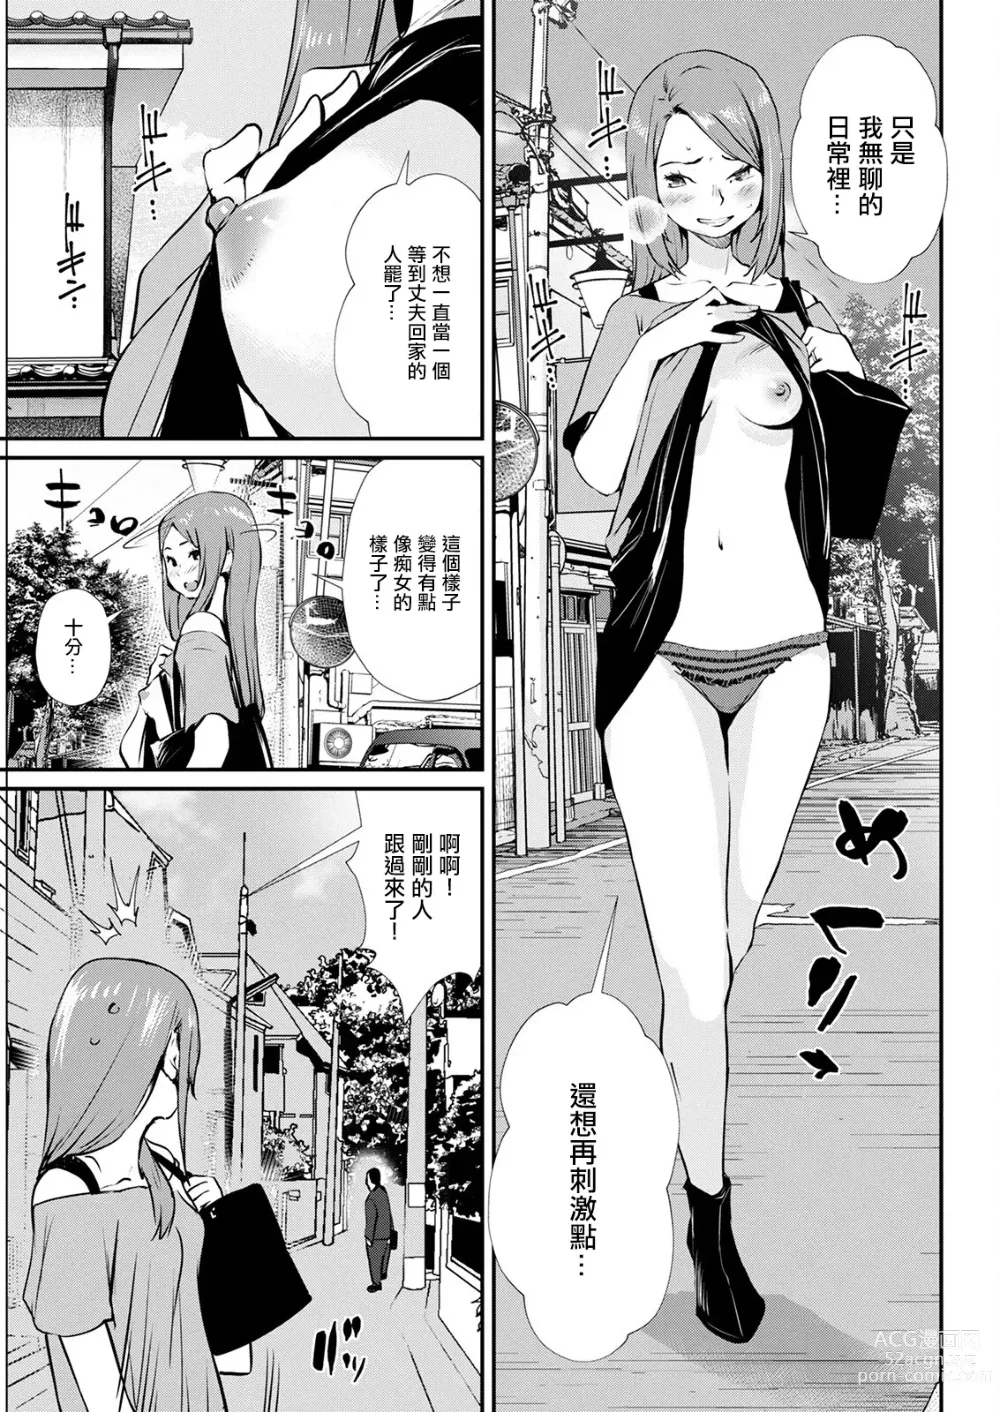 Page 3 of manga Abunai Chouhatsu